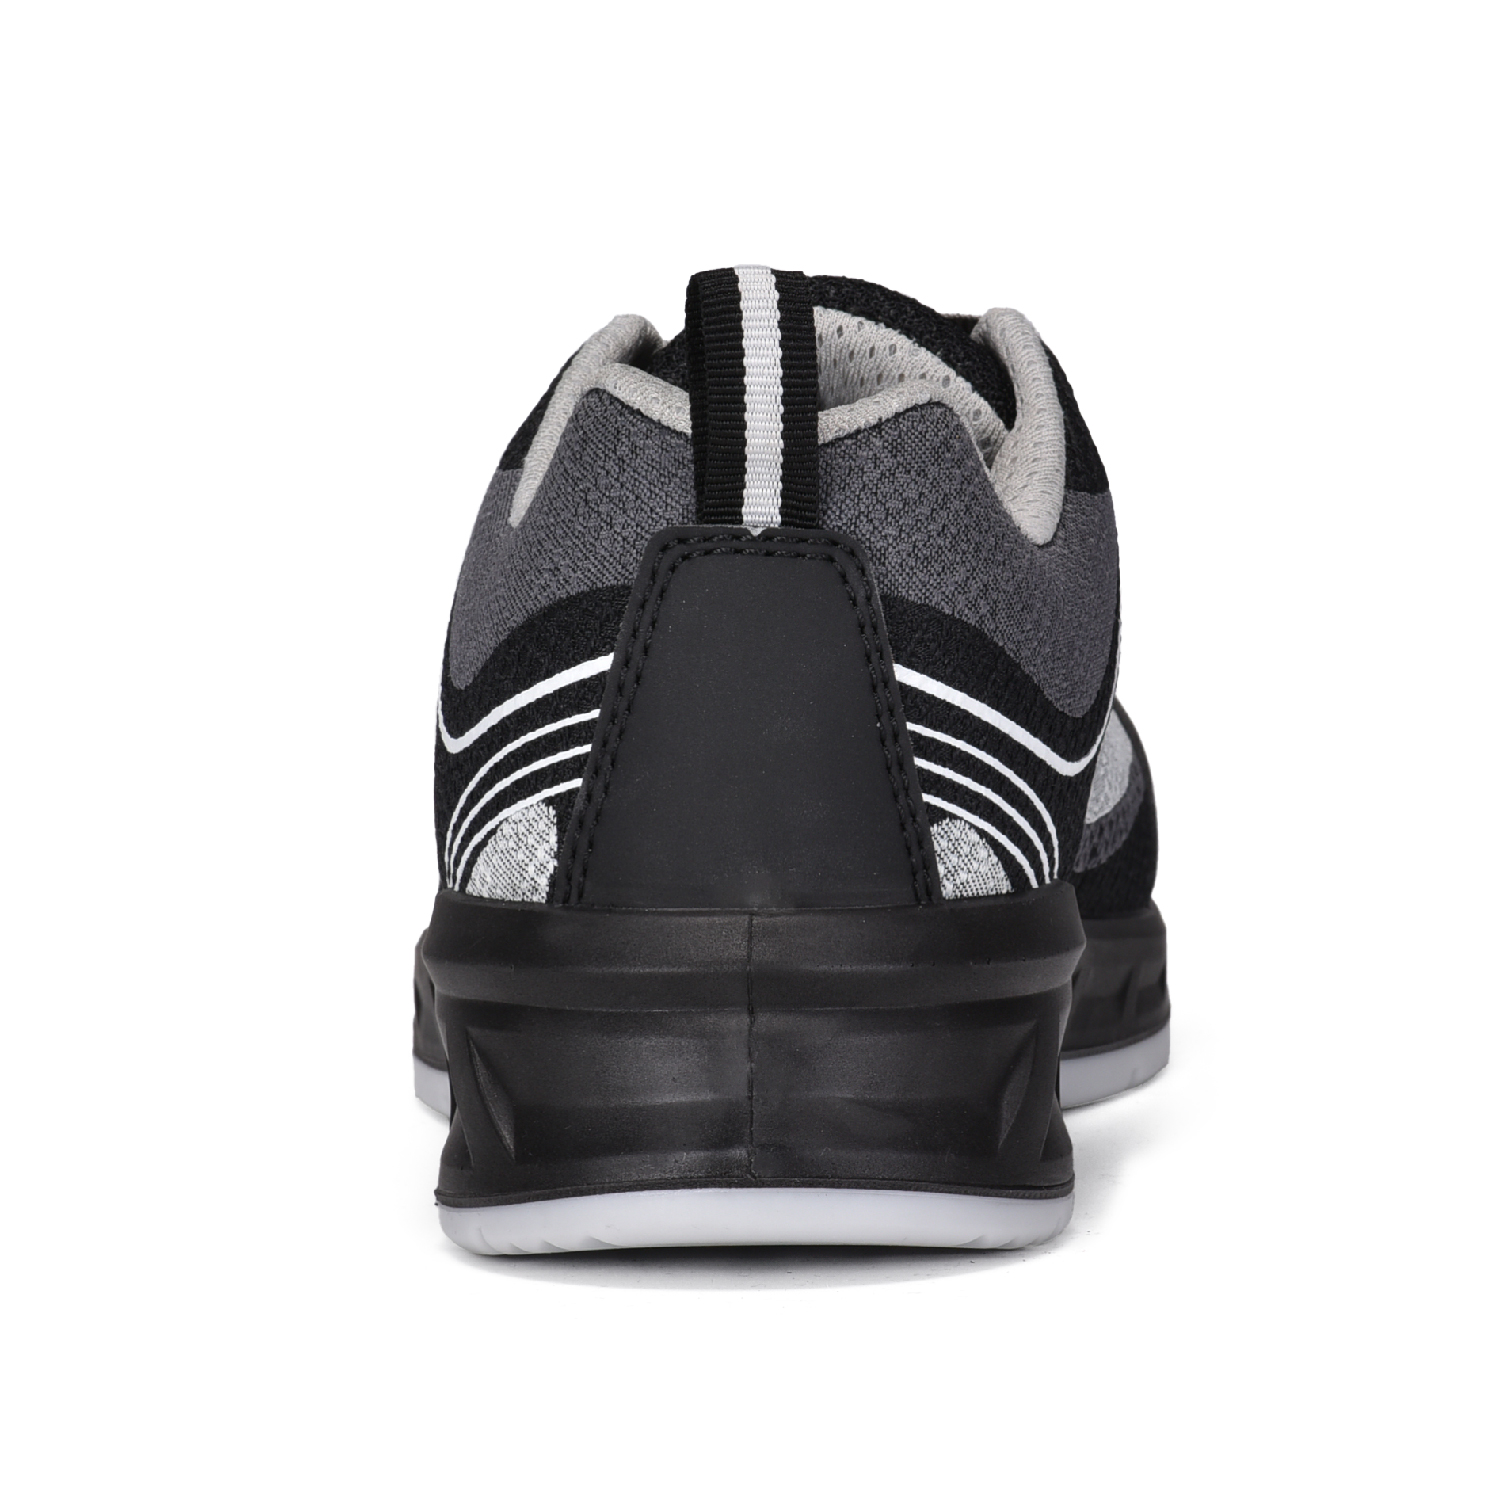 Chaussures de sécurité légères et respirantes en tissu tissé 3D L-7501 gris